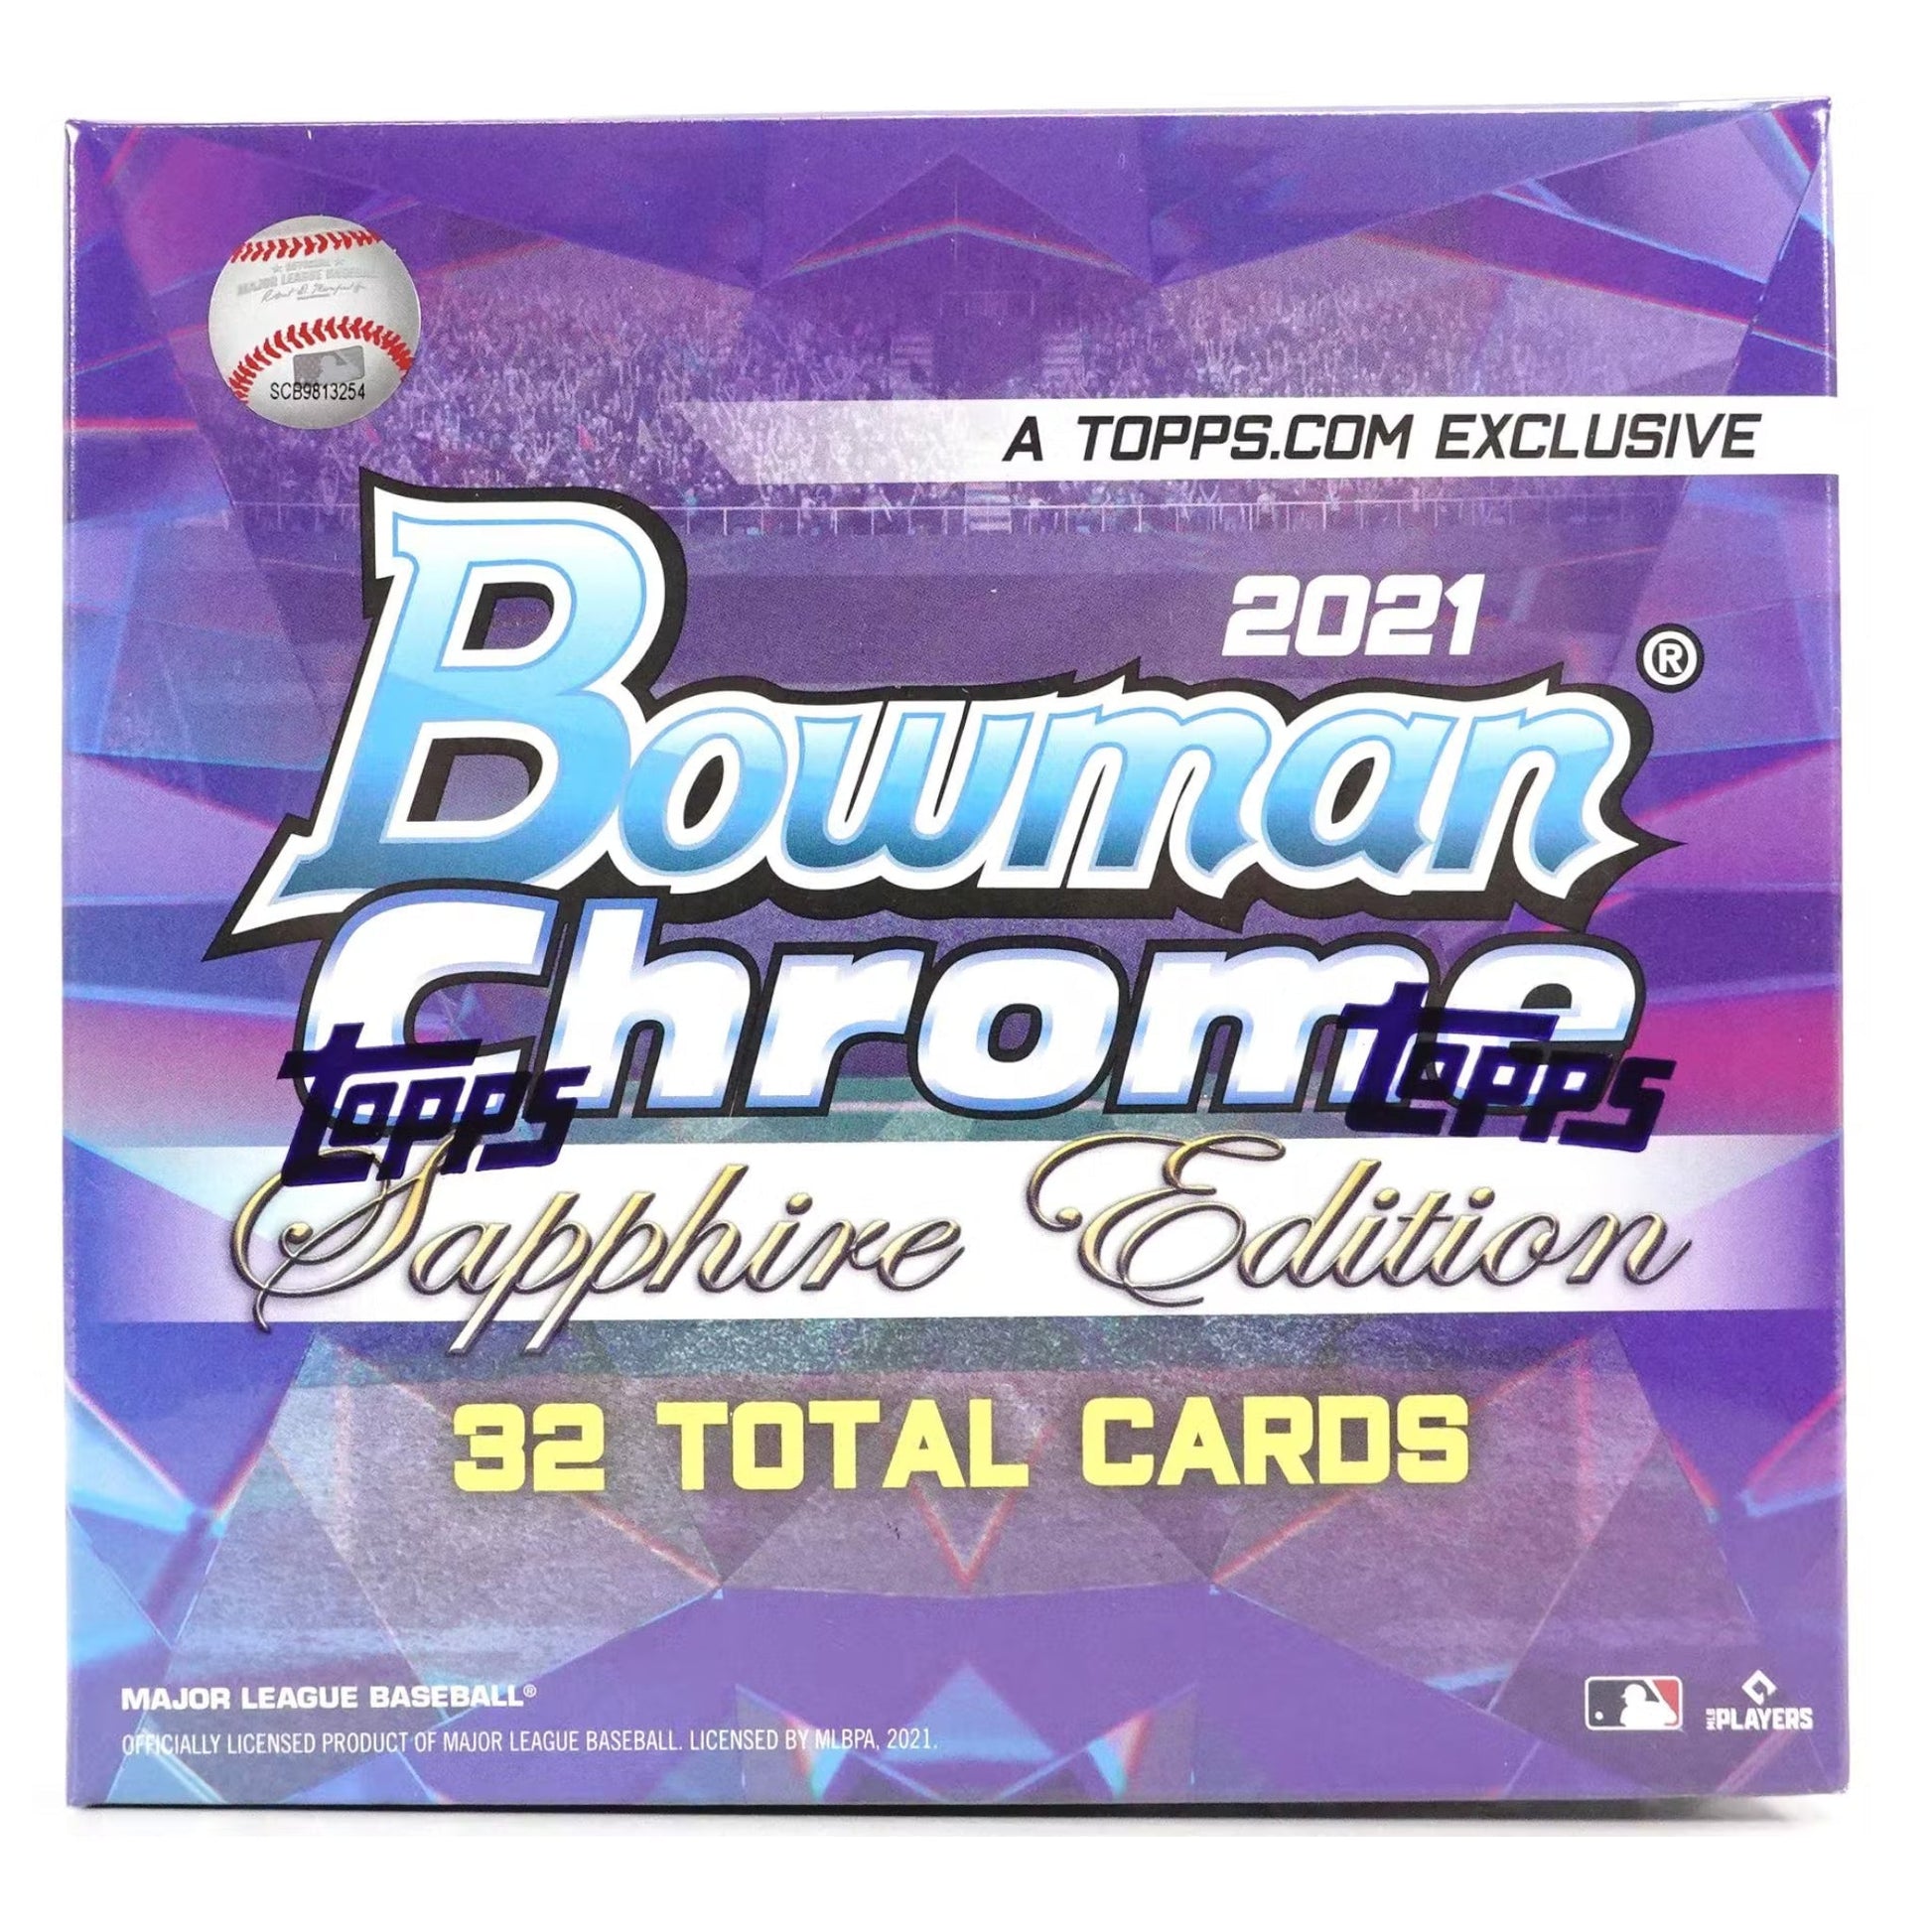 2021 Bowman Chrome Sapphire Baseball Box